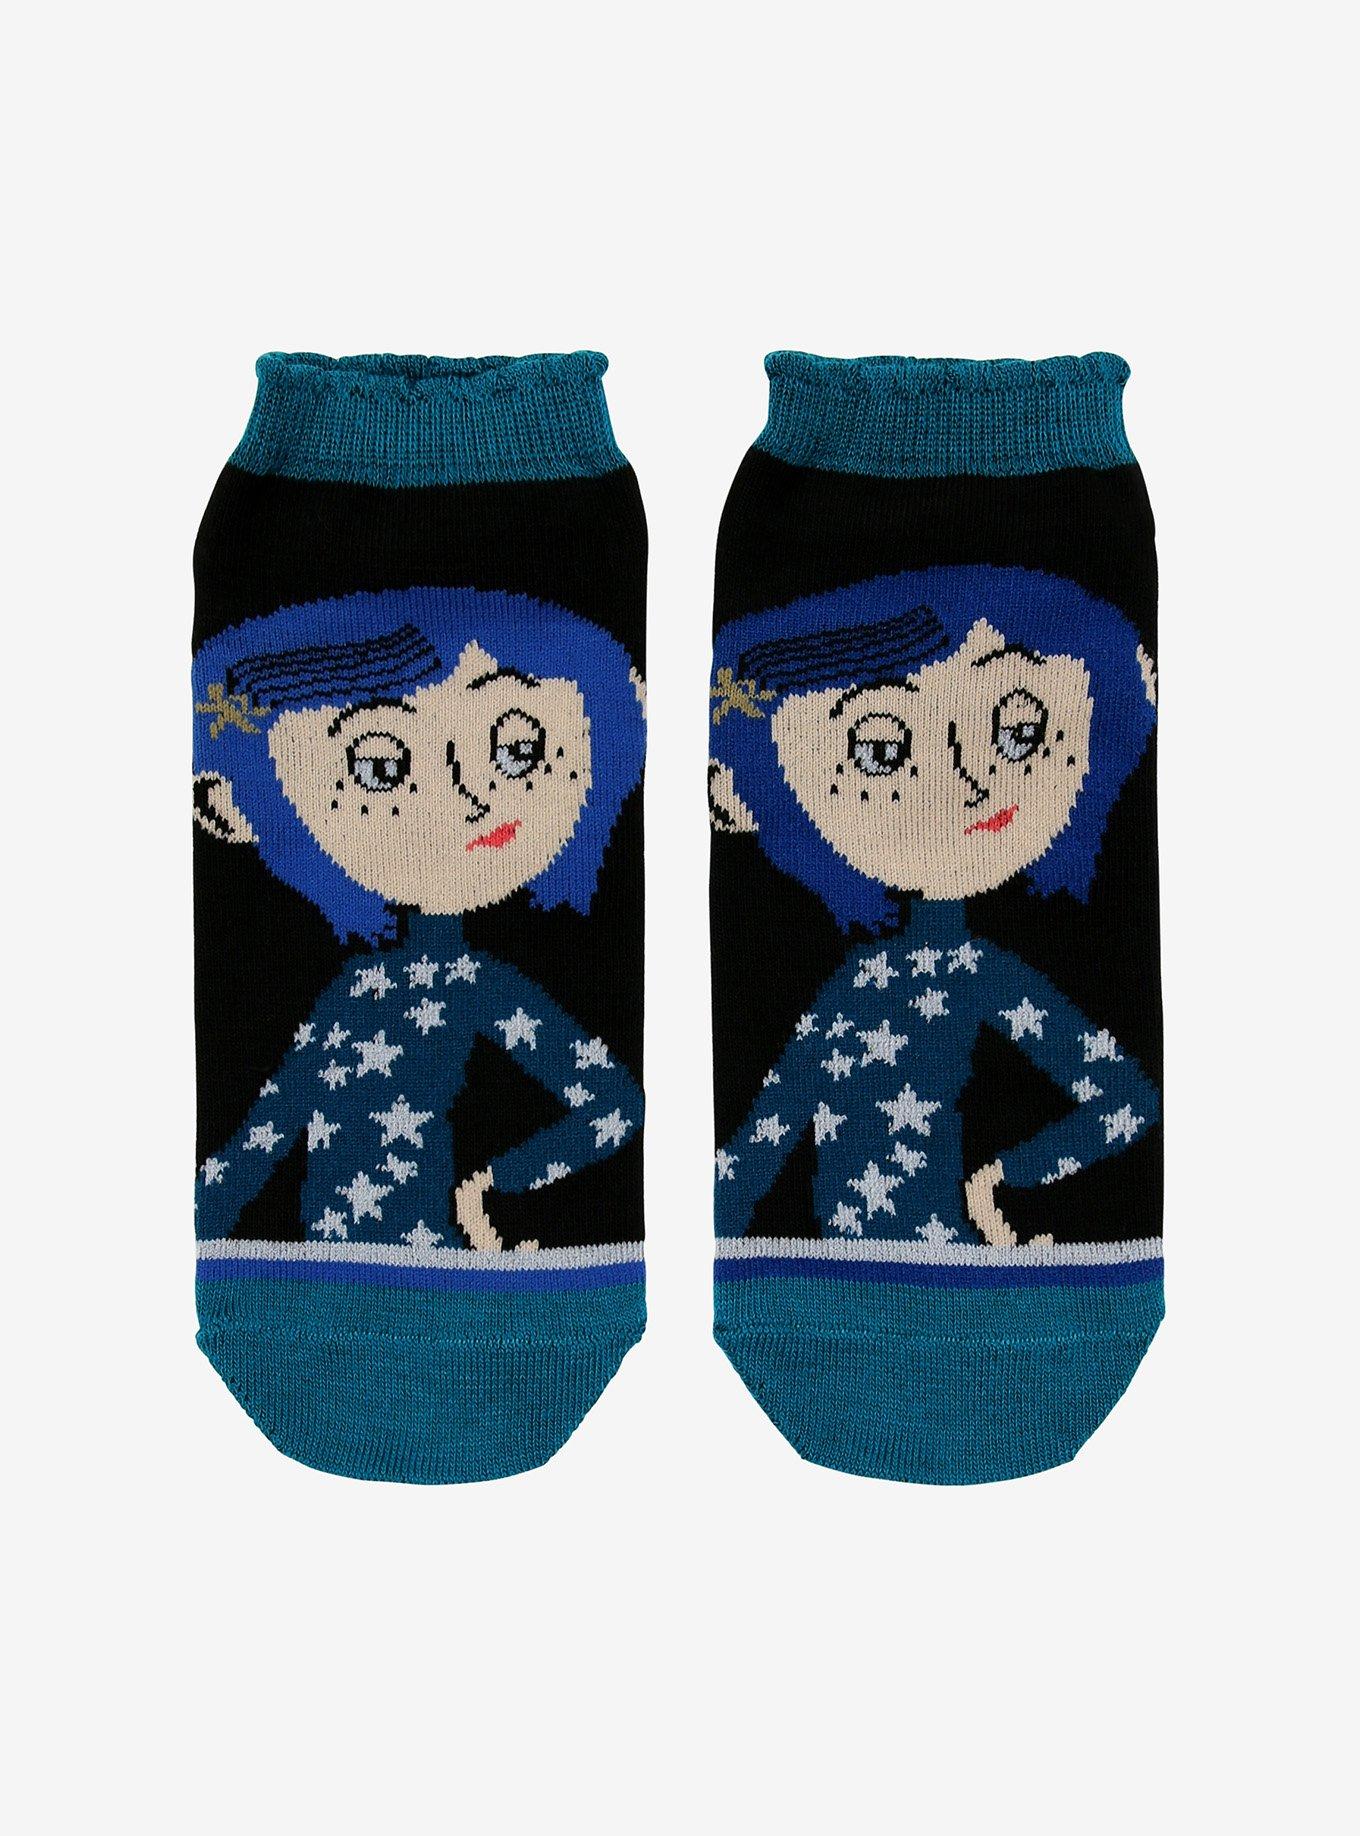 Coraline Blue No-Show Socks, , hi-res